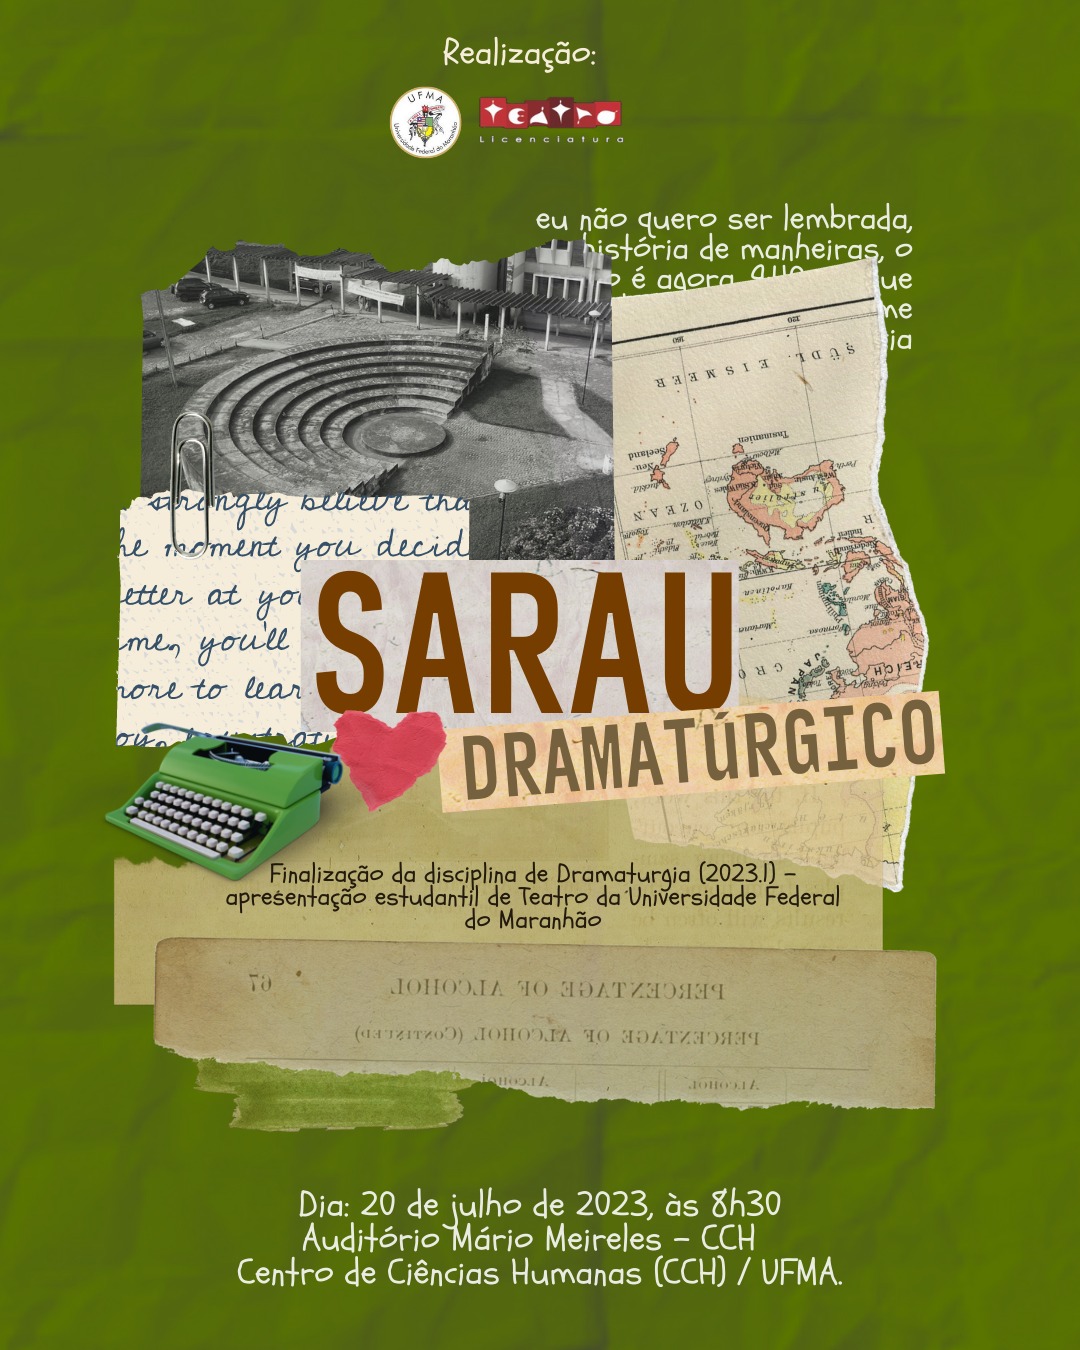 Curso de Licenciatura em Teatro promove Sarau Dramatúrgico amanhã, 20